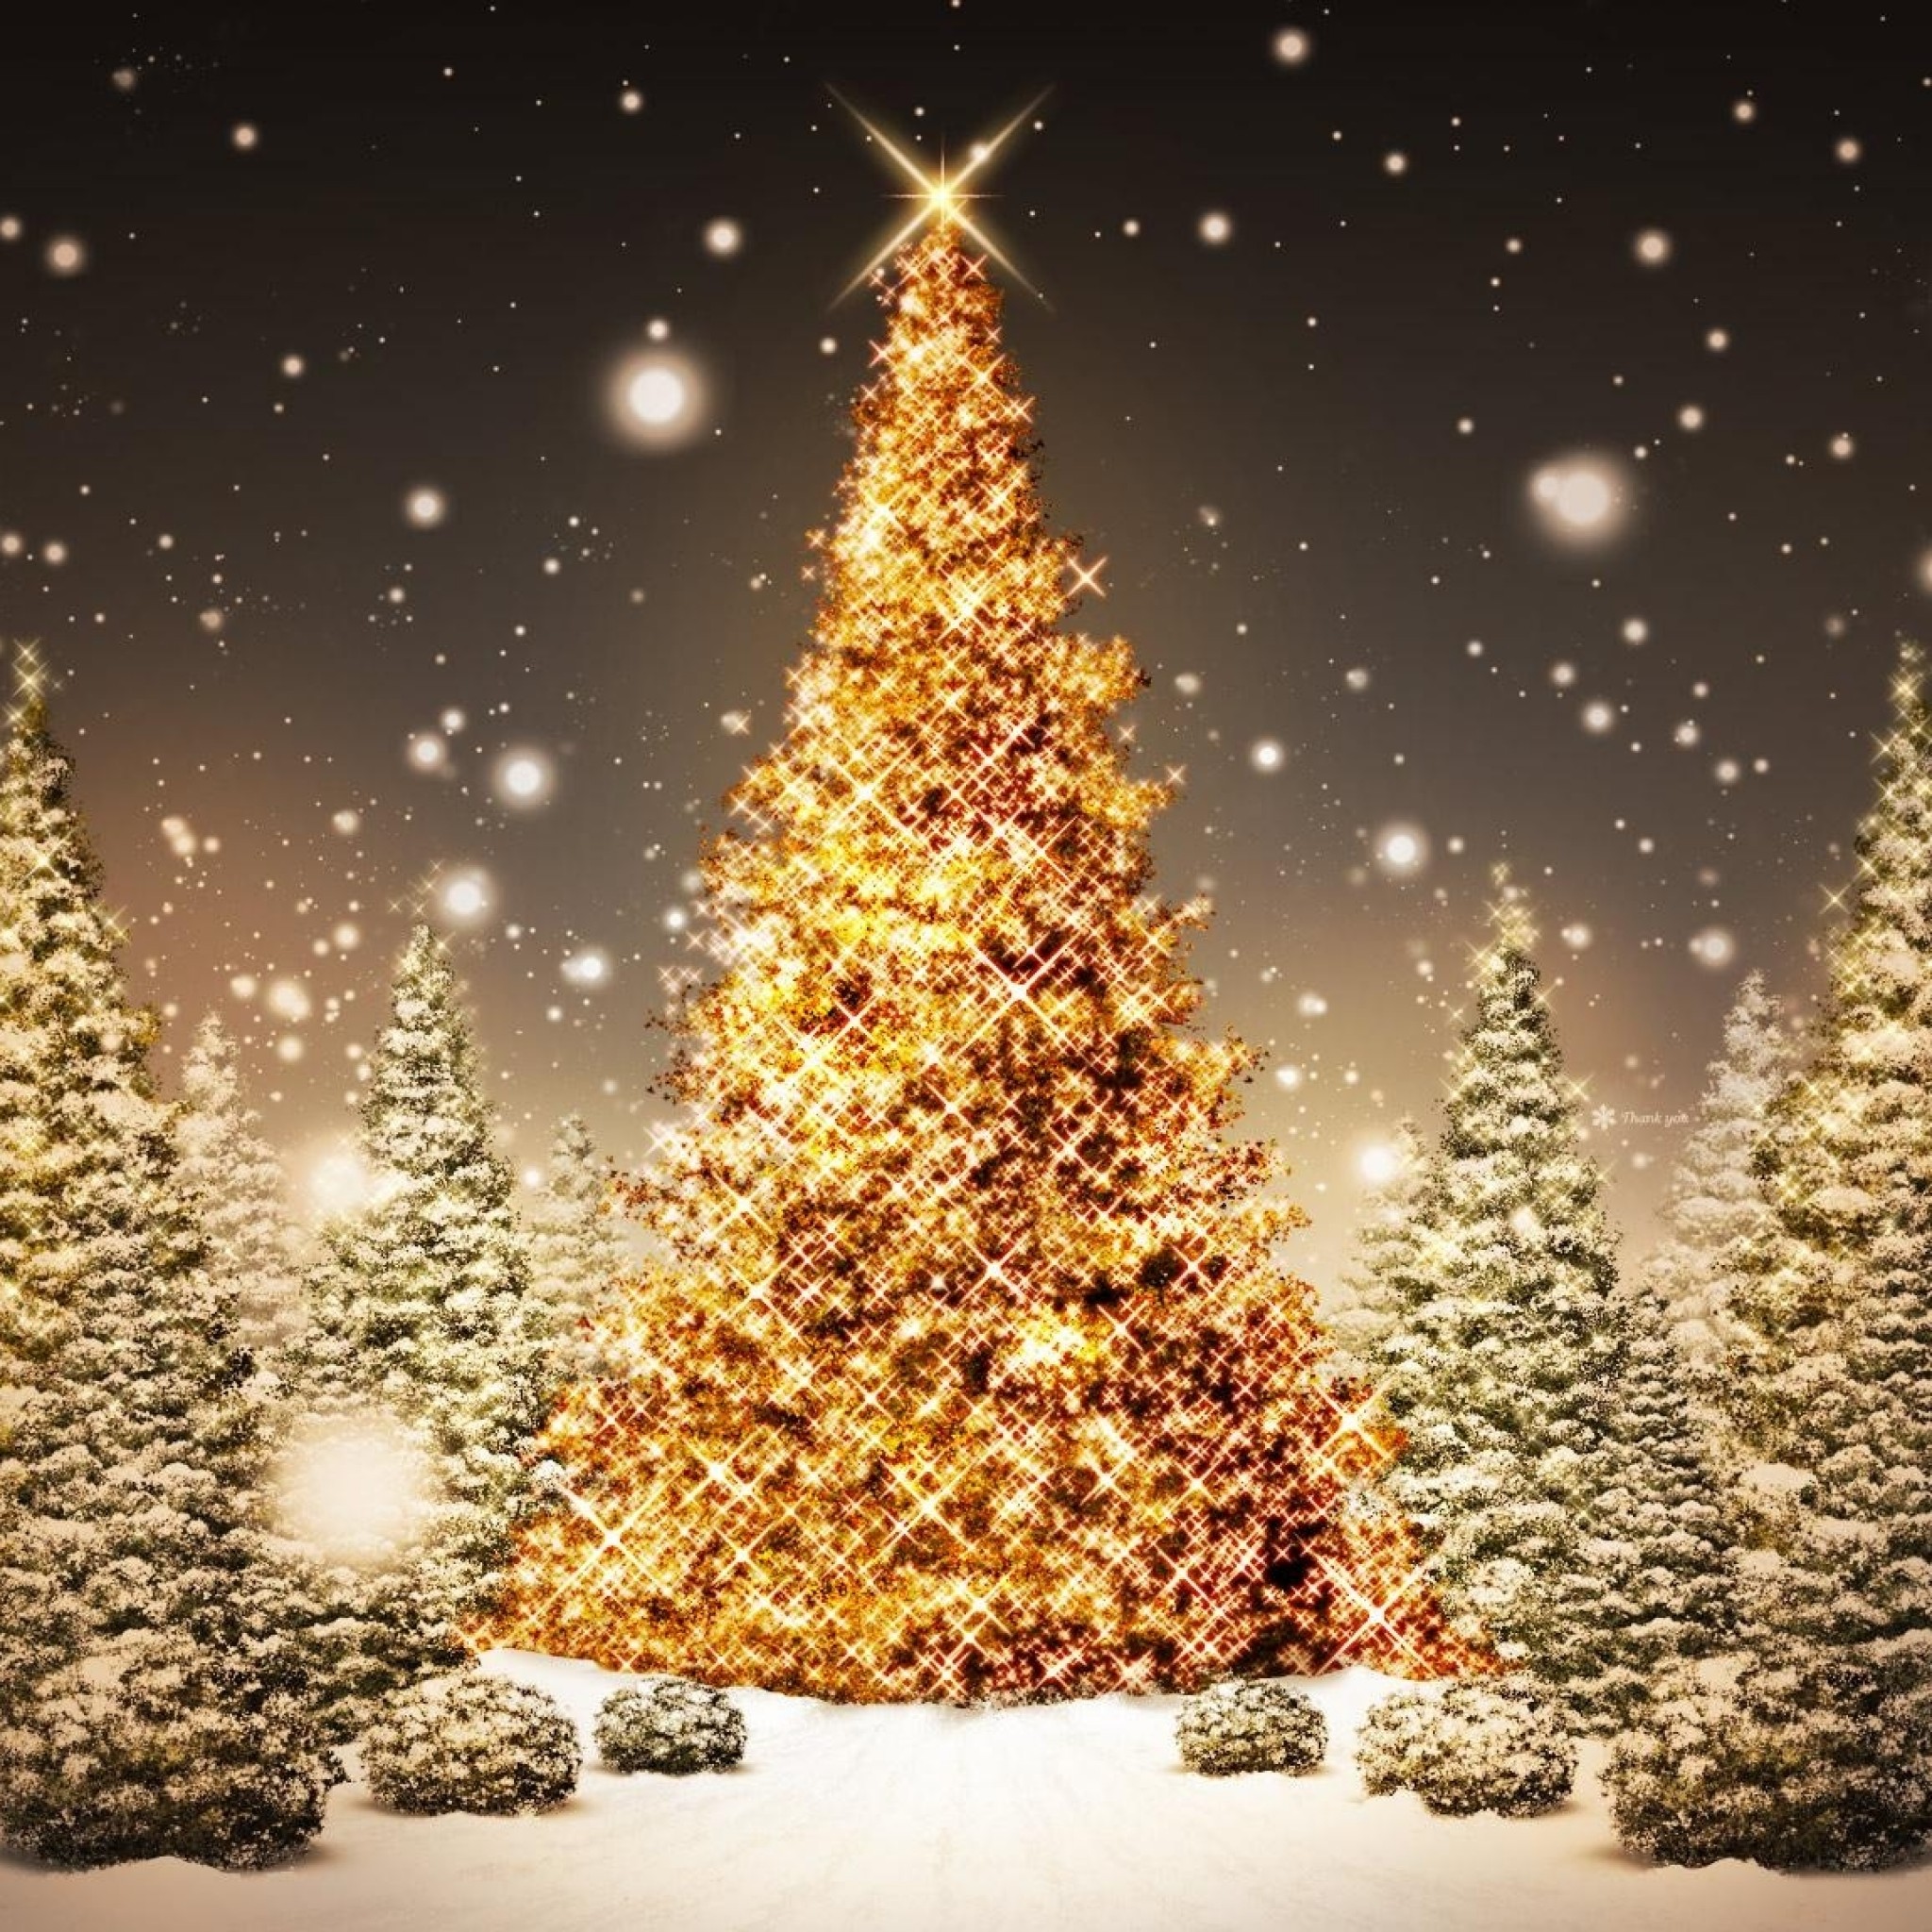 navidad ipad fondo de pantalla,árbol de navidad,decoración navideña,árbol,luces de navidad,nochebuena